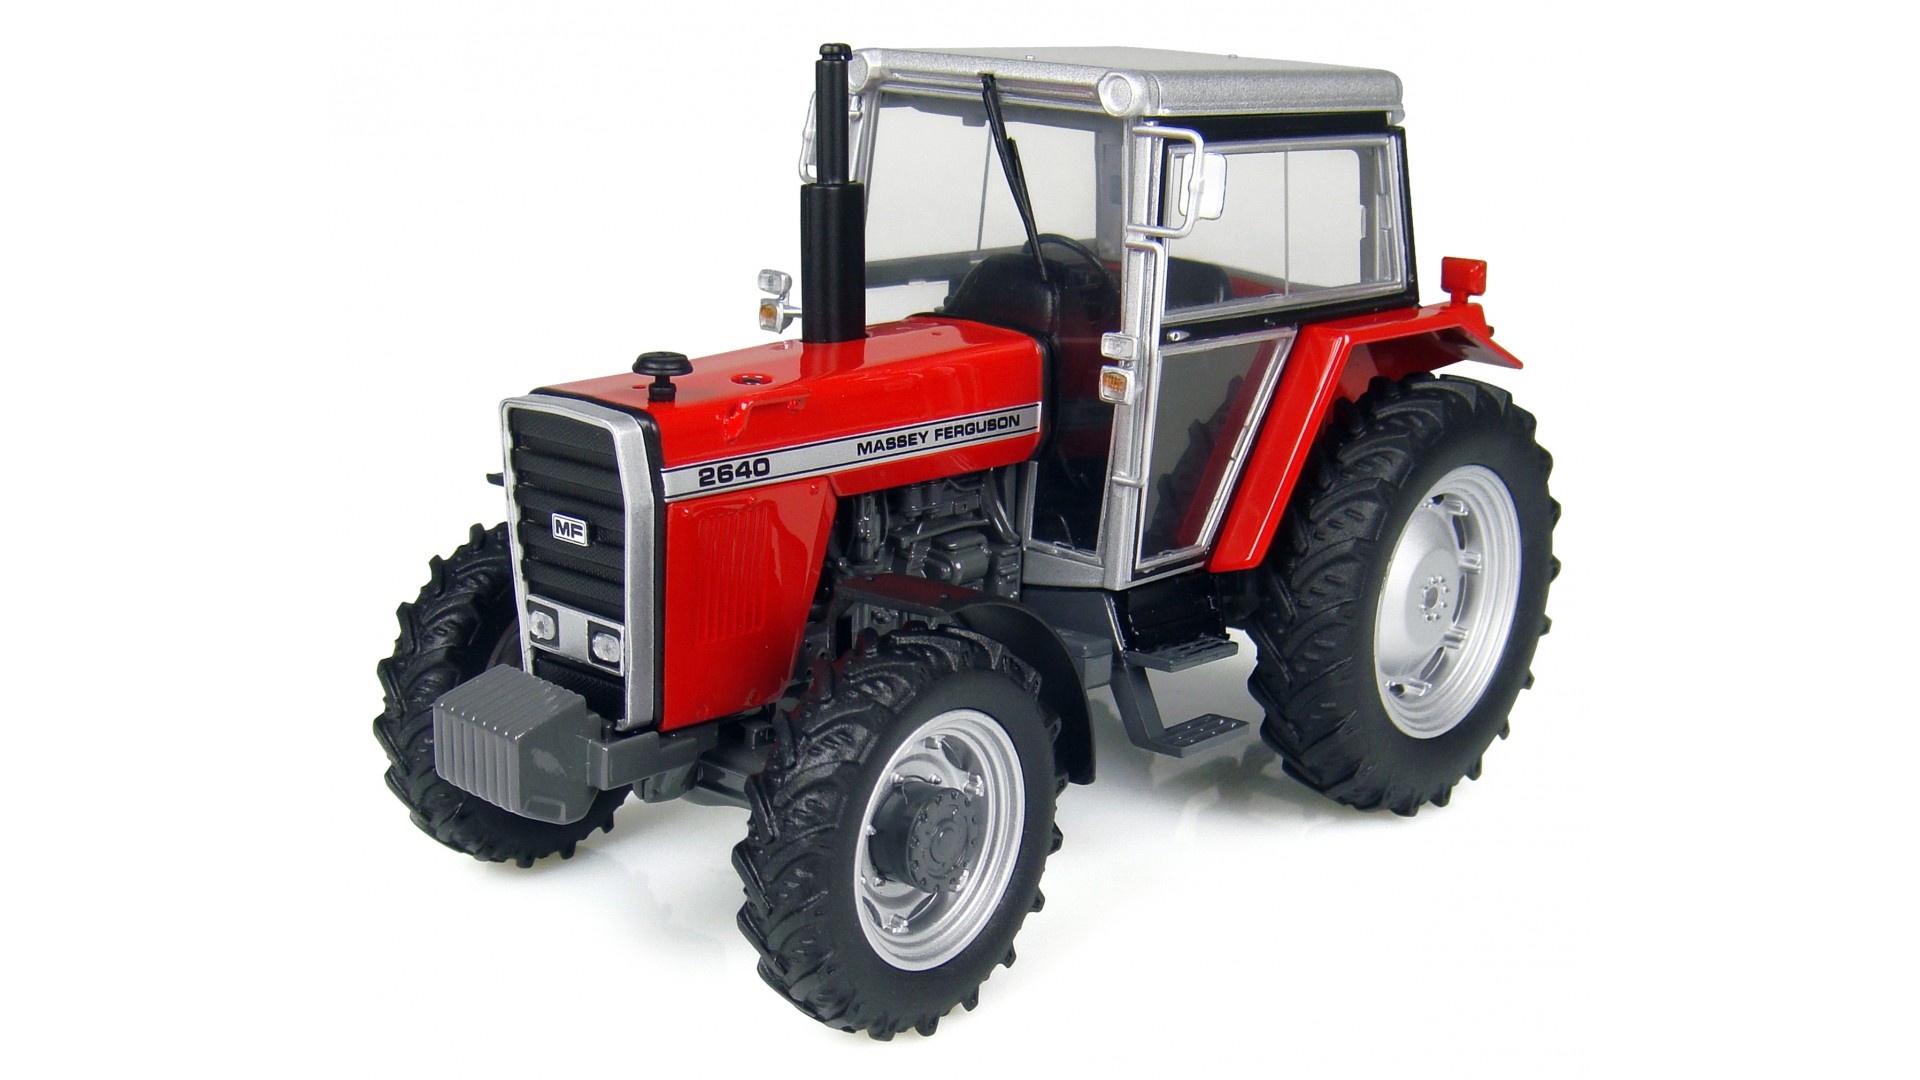 Трактор том 1. Трактор Massey Ferguson игрушка. 4 WD Massey Ferguson 4000 tractors. Трактор wd2204. 335025 Модель трактор фермер.